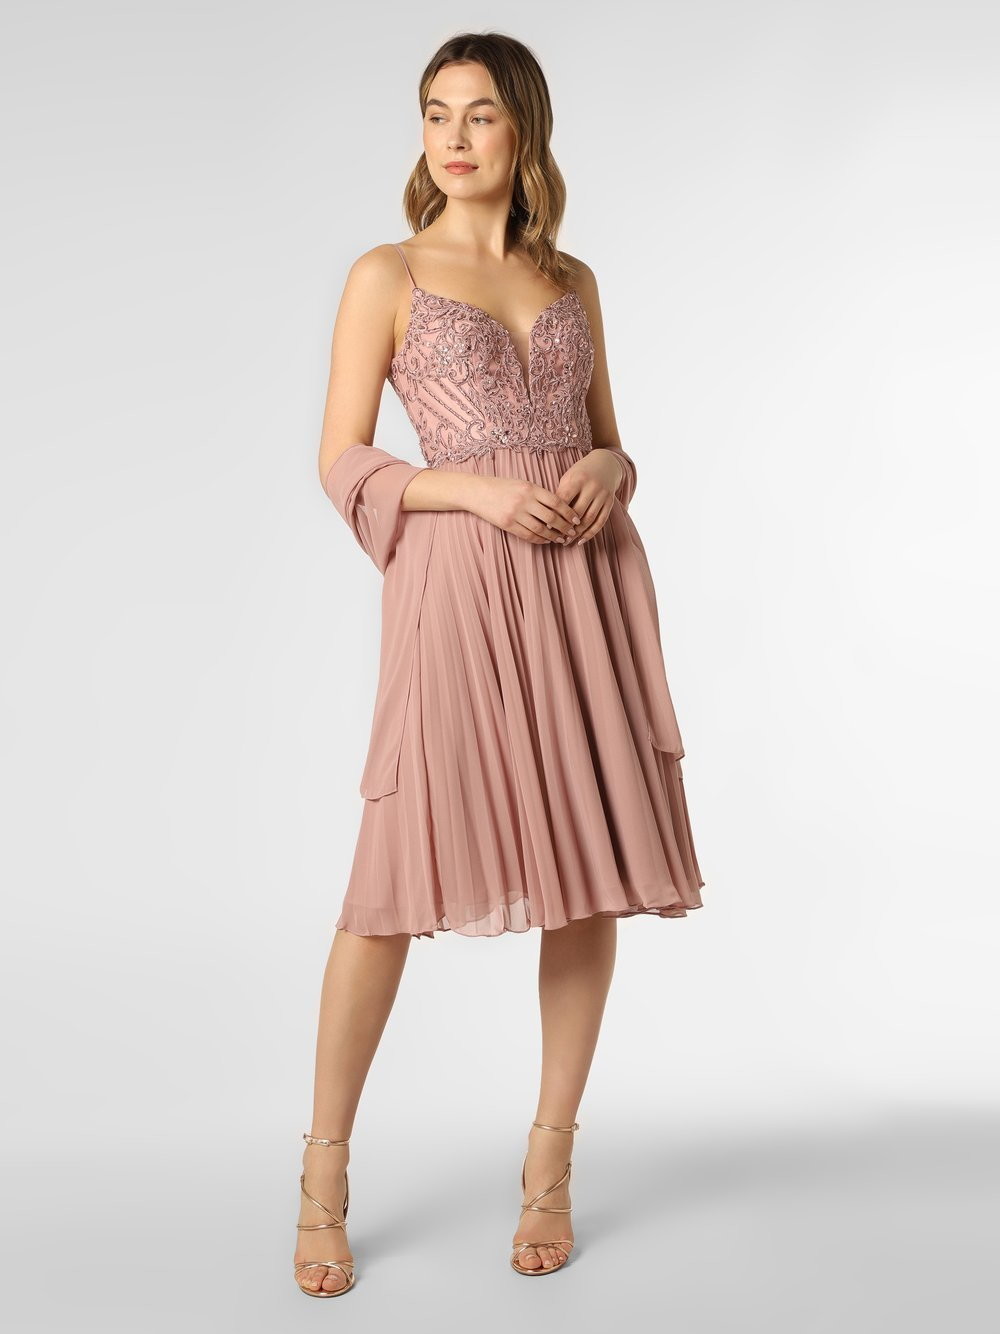 Unique Damska sukienka wieczorowa z etolą, różowy